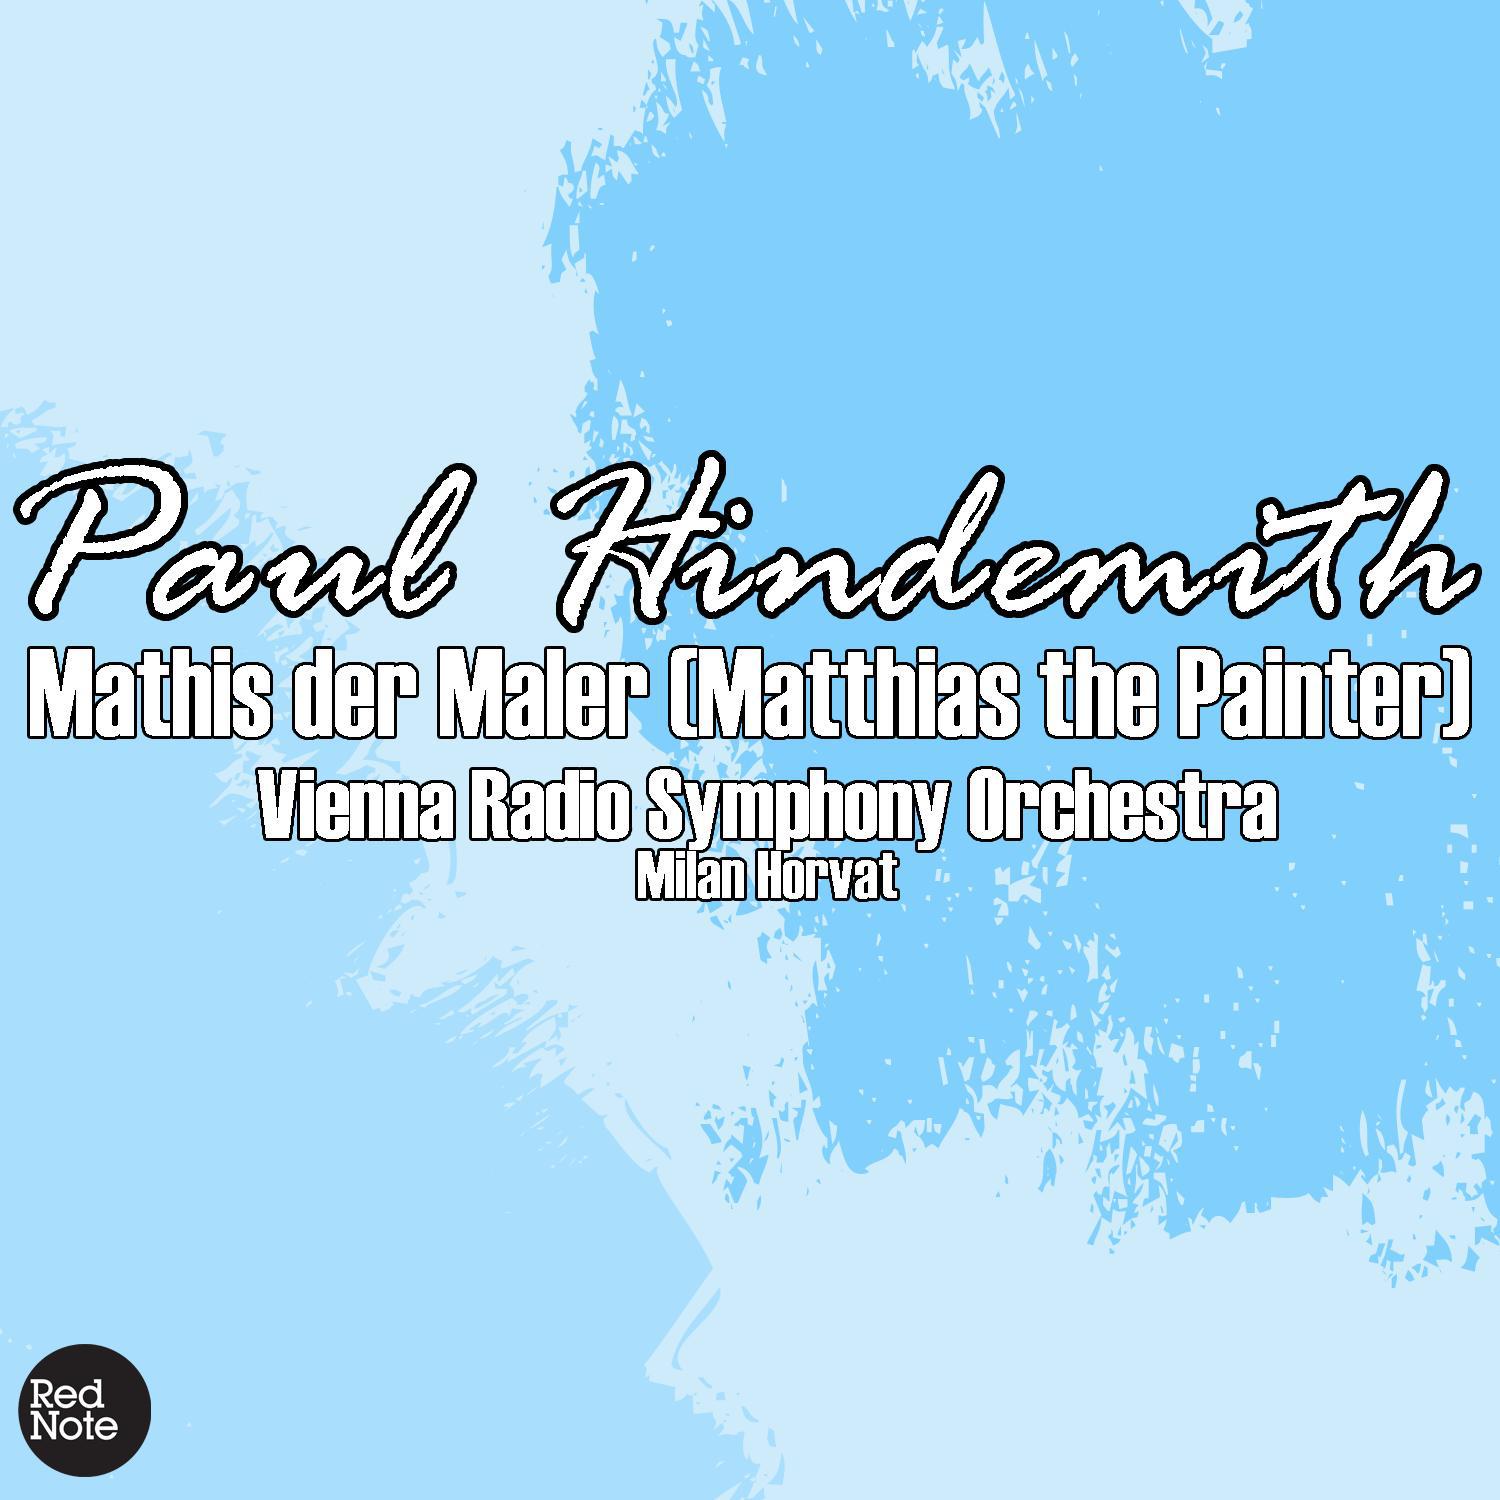 Mathis der Maler (Matthias the Painter): II. Grablegung (Entombment)